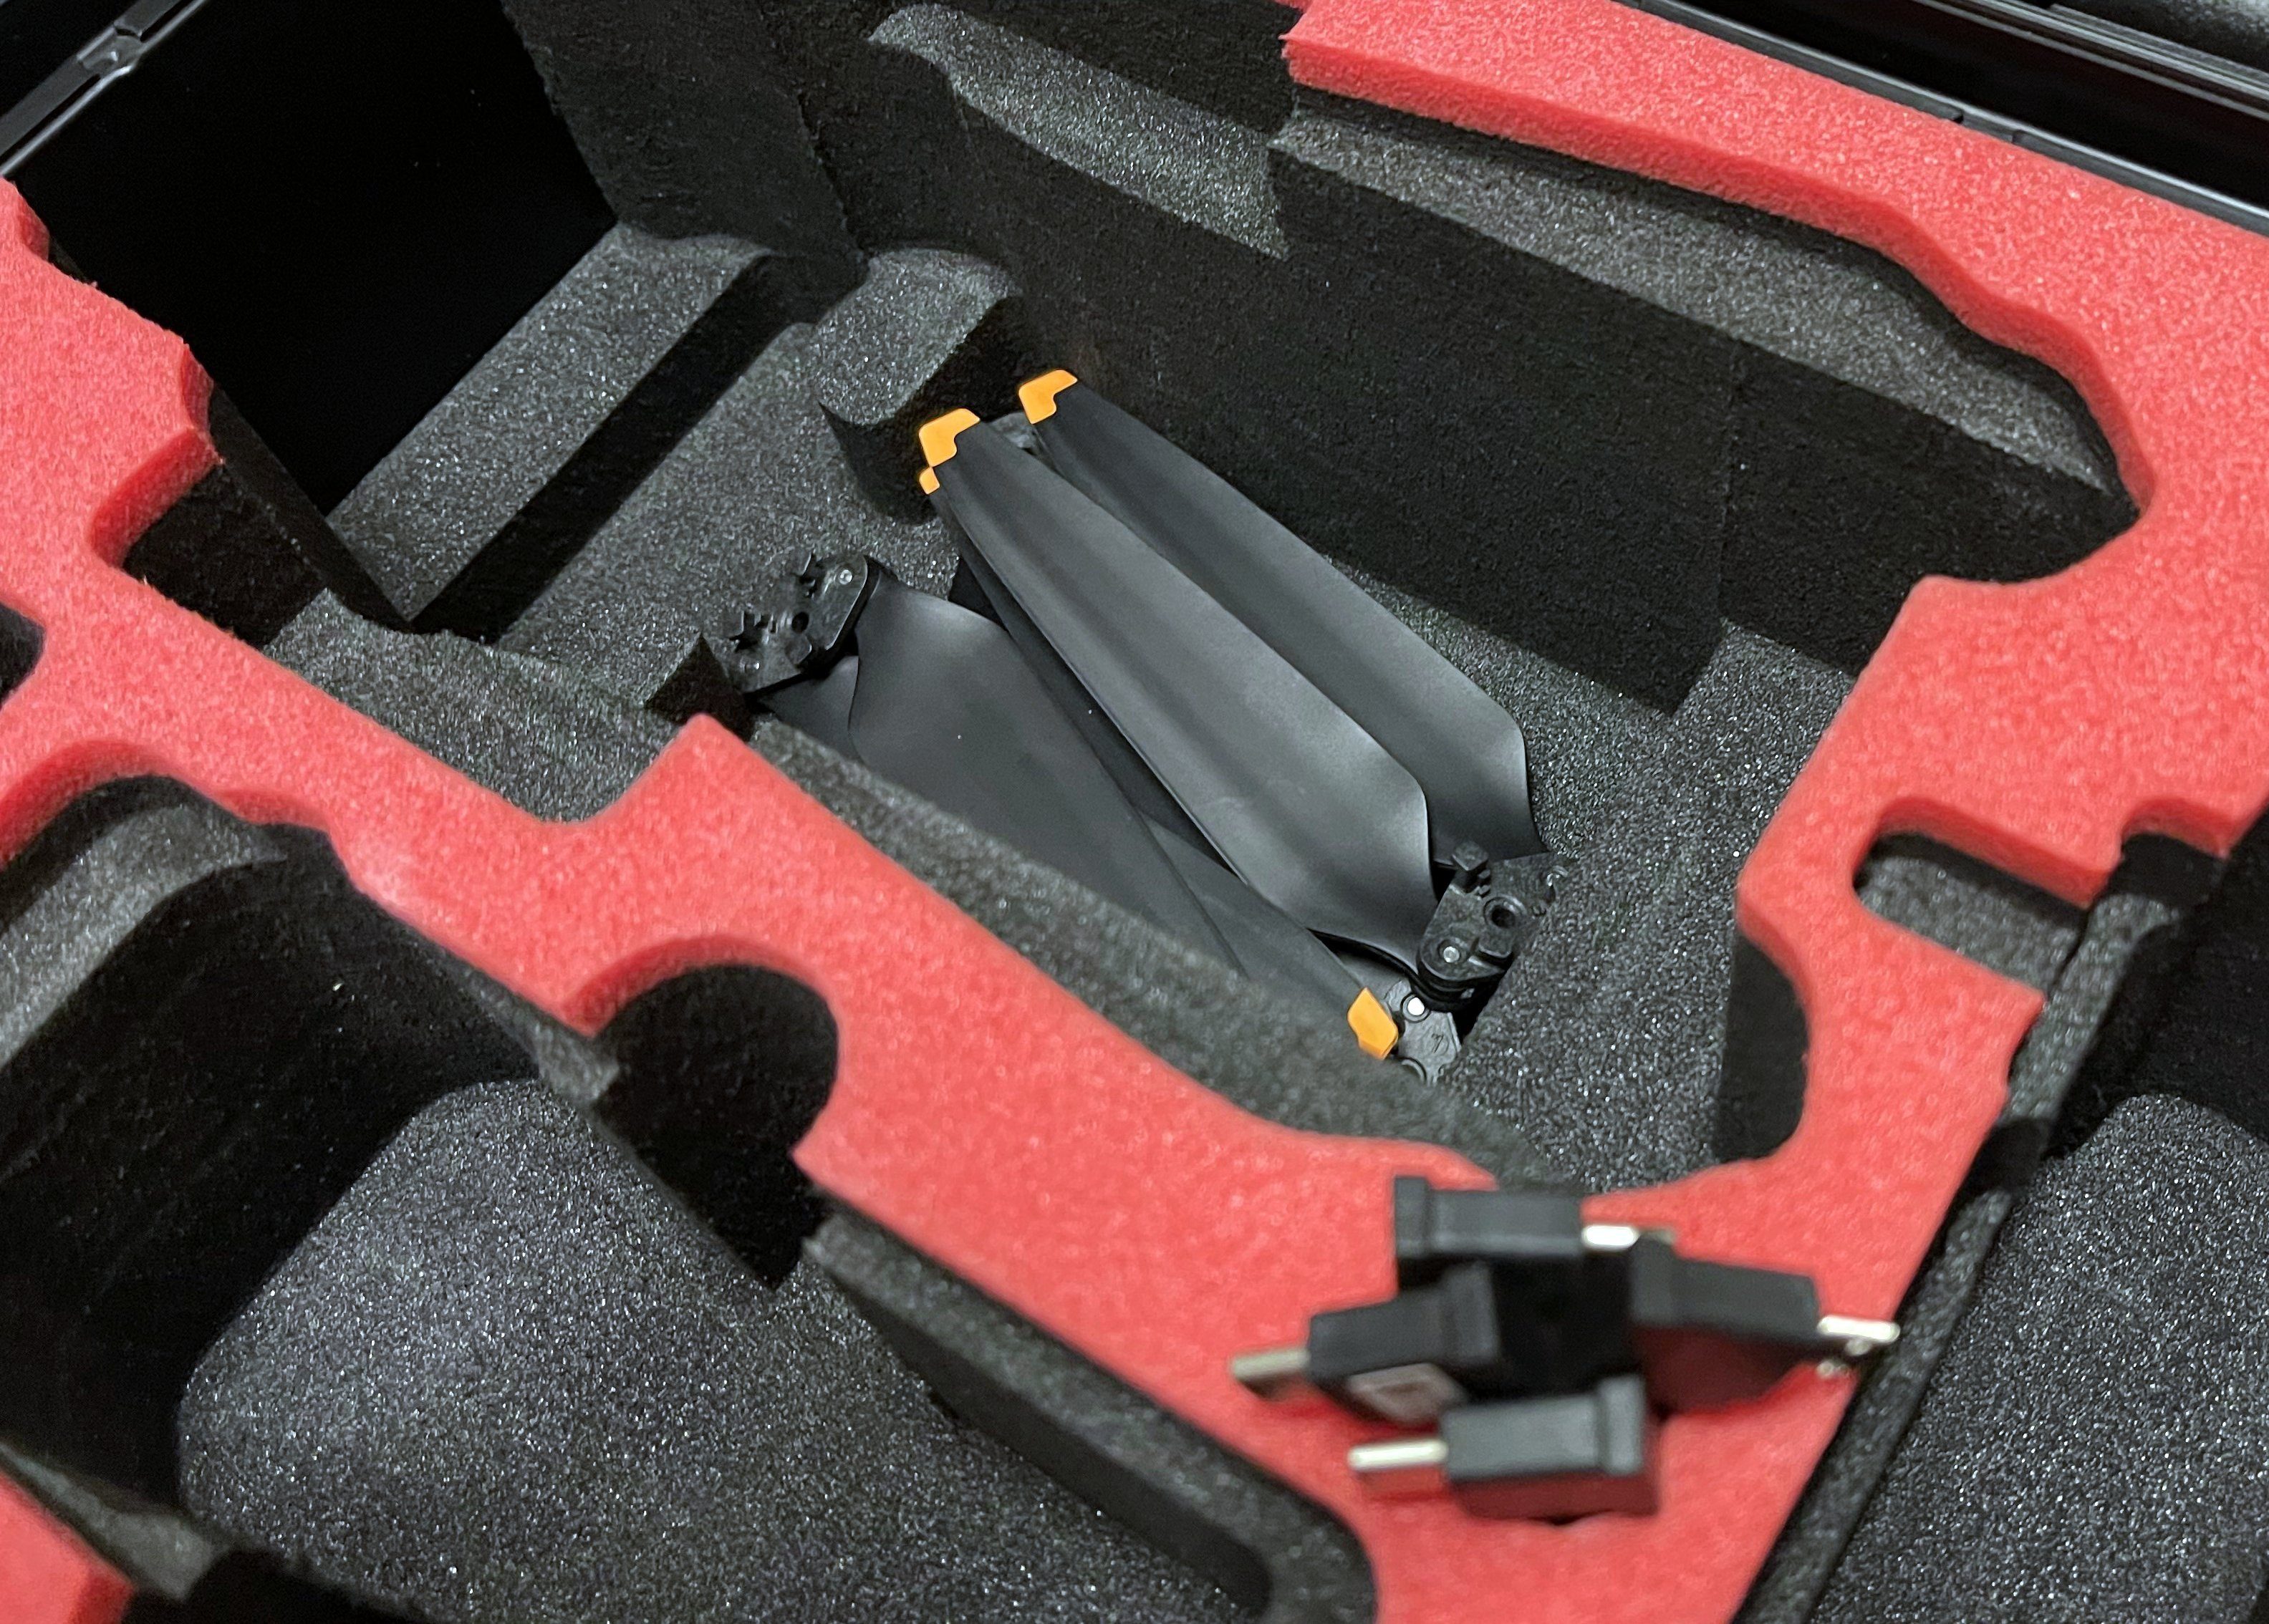 In MC-CASES Koffer DJI Drohnen-Tasche - 3 - für Vorbestellung MC-CASES Edition hergestellt Mavic - Deutschland Kompakt